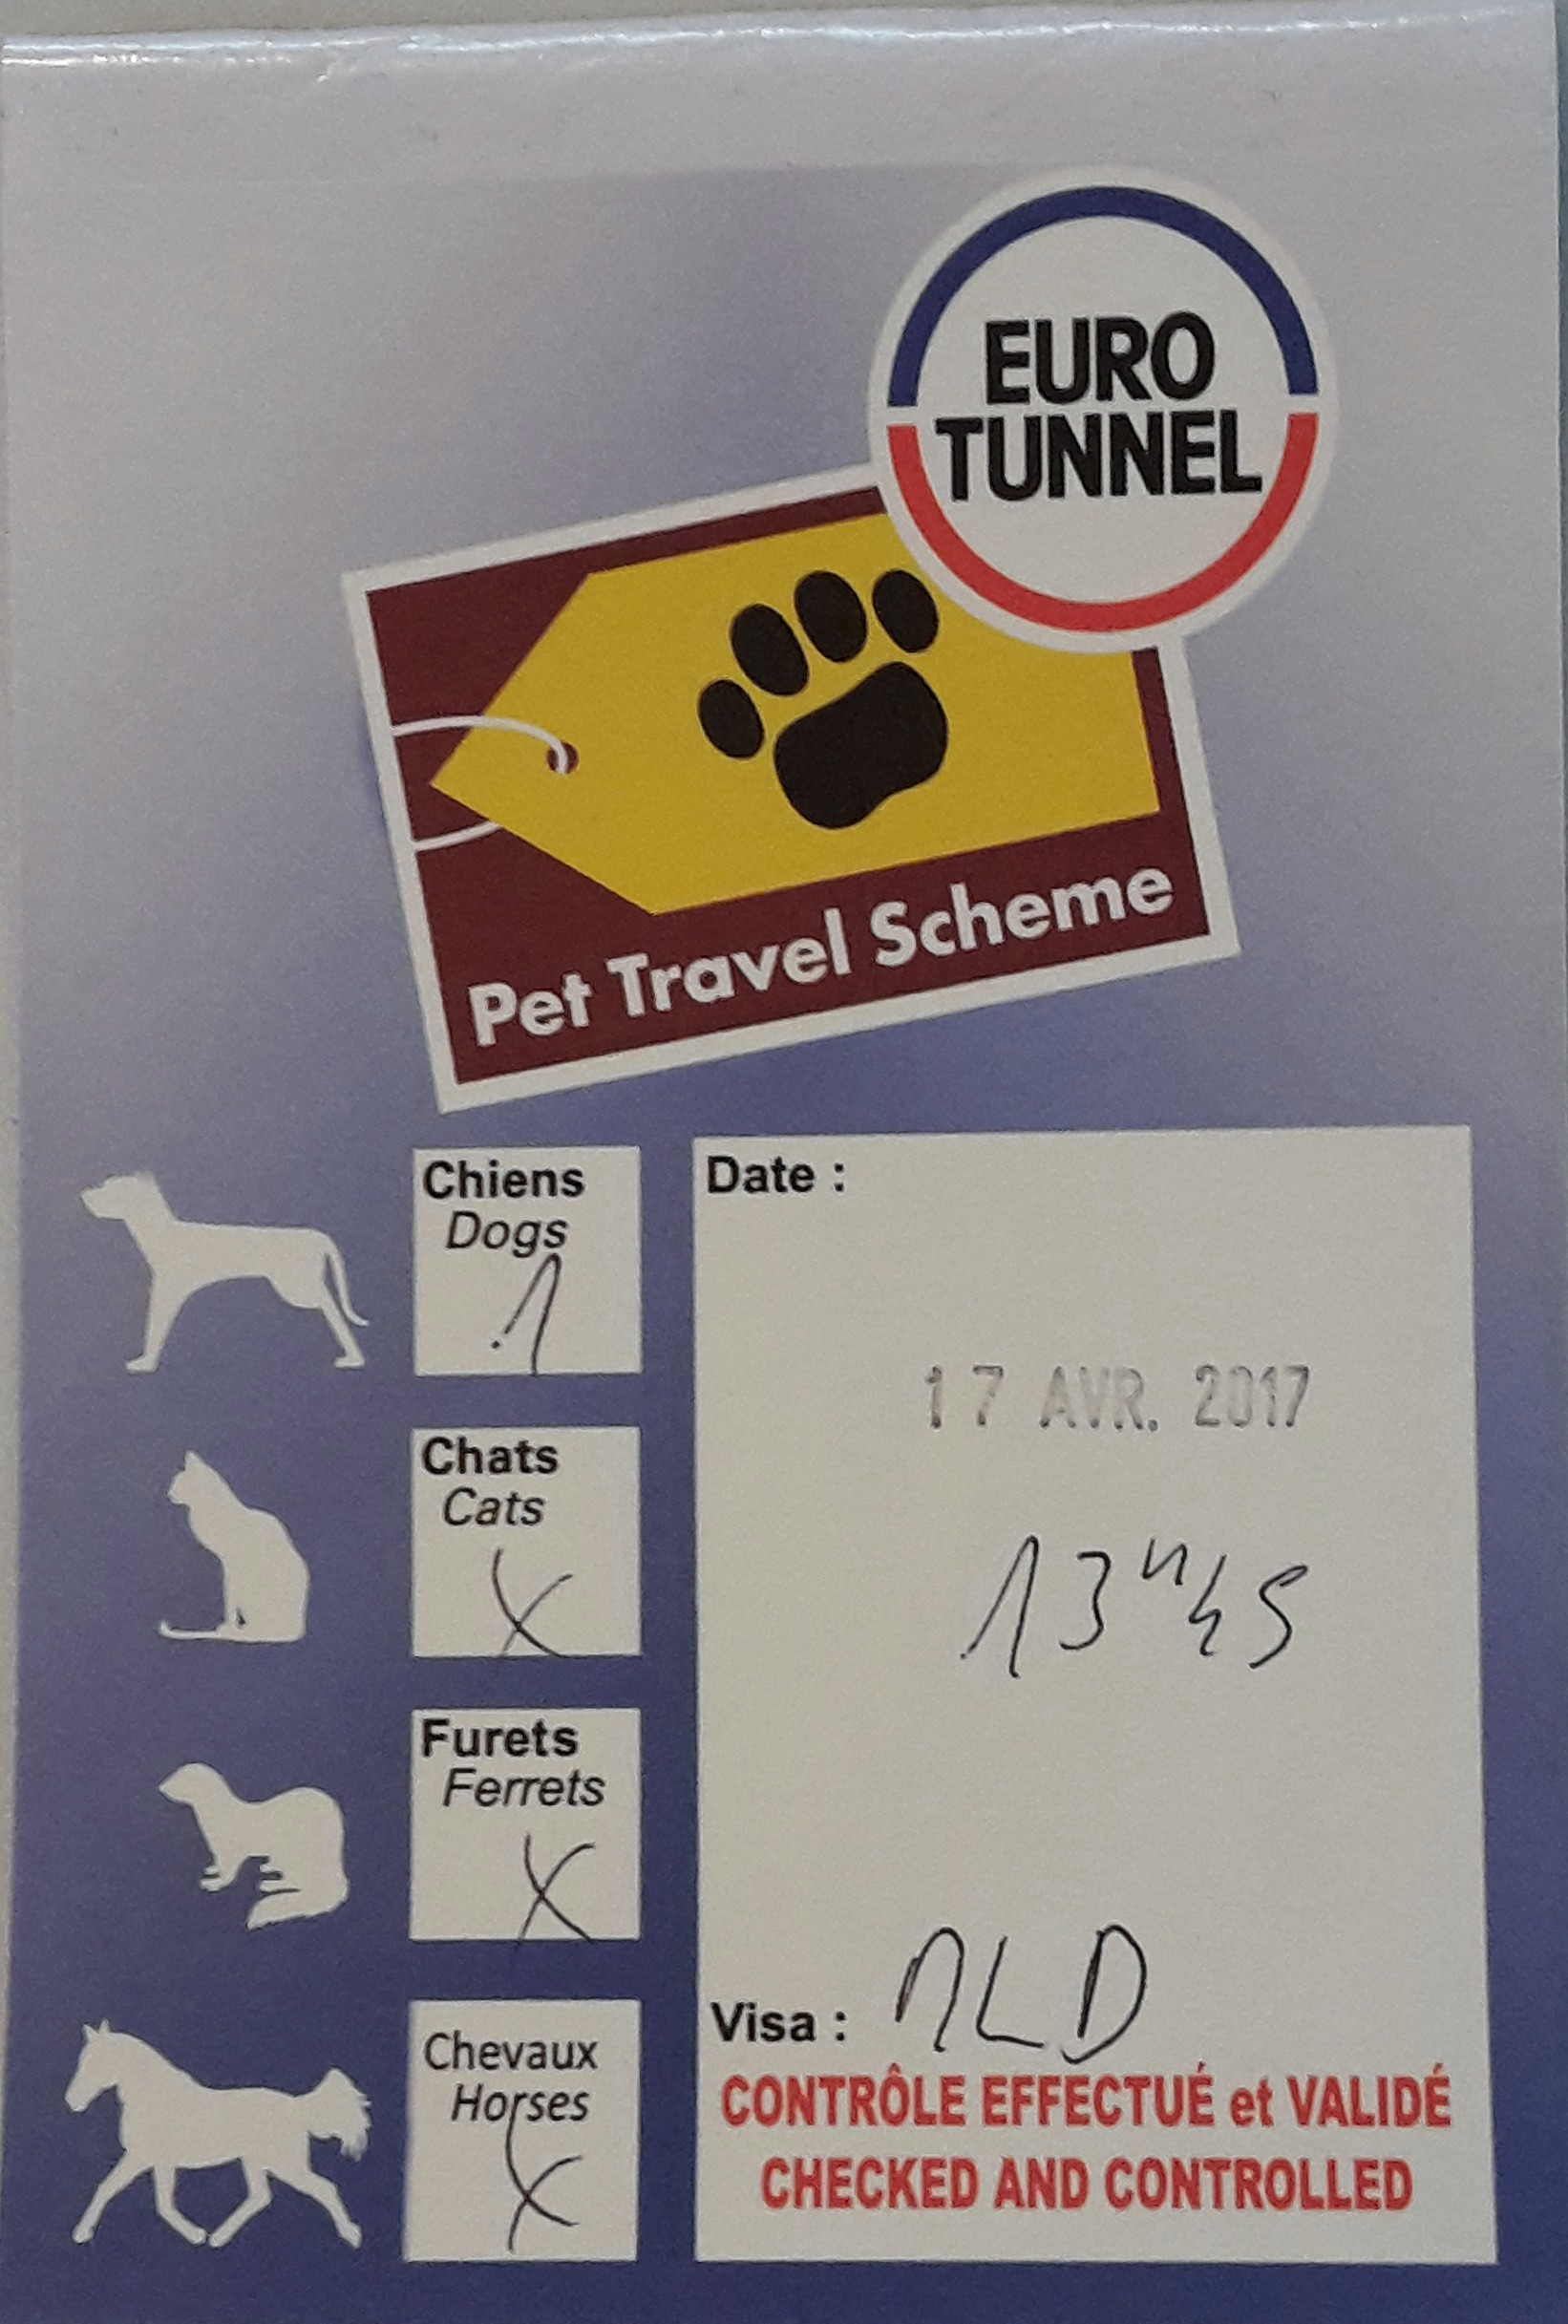 Eurotunnel pet travel scheme dashboard document